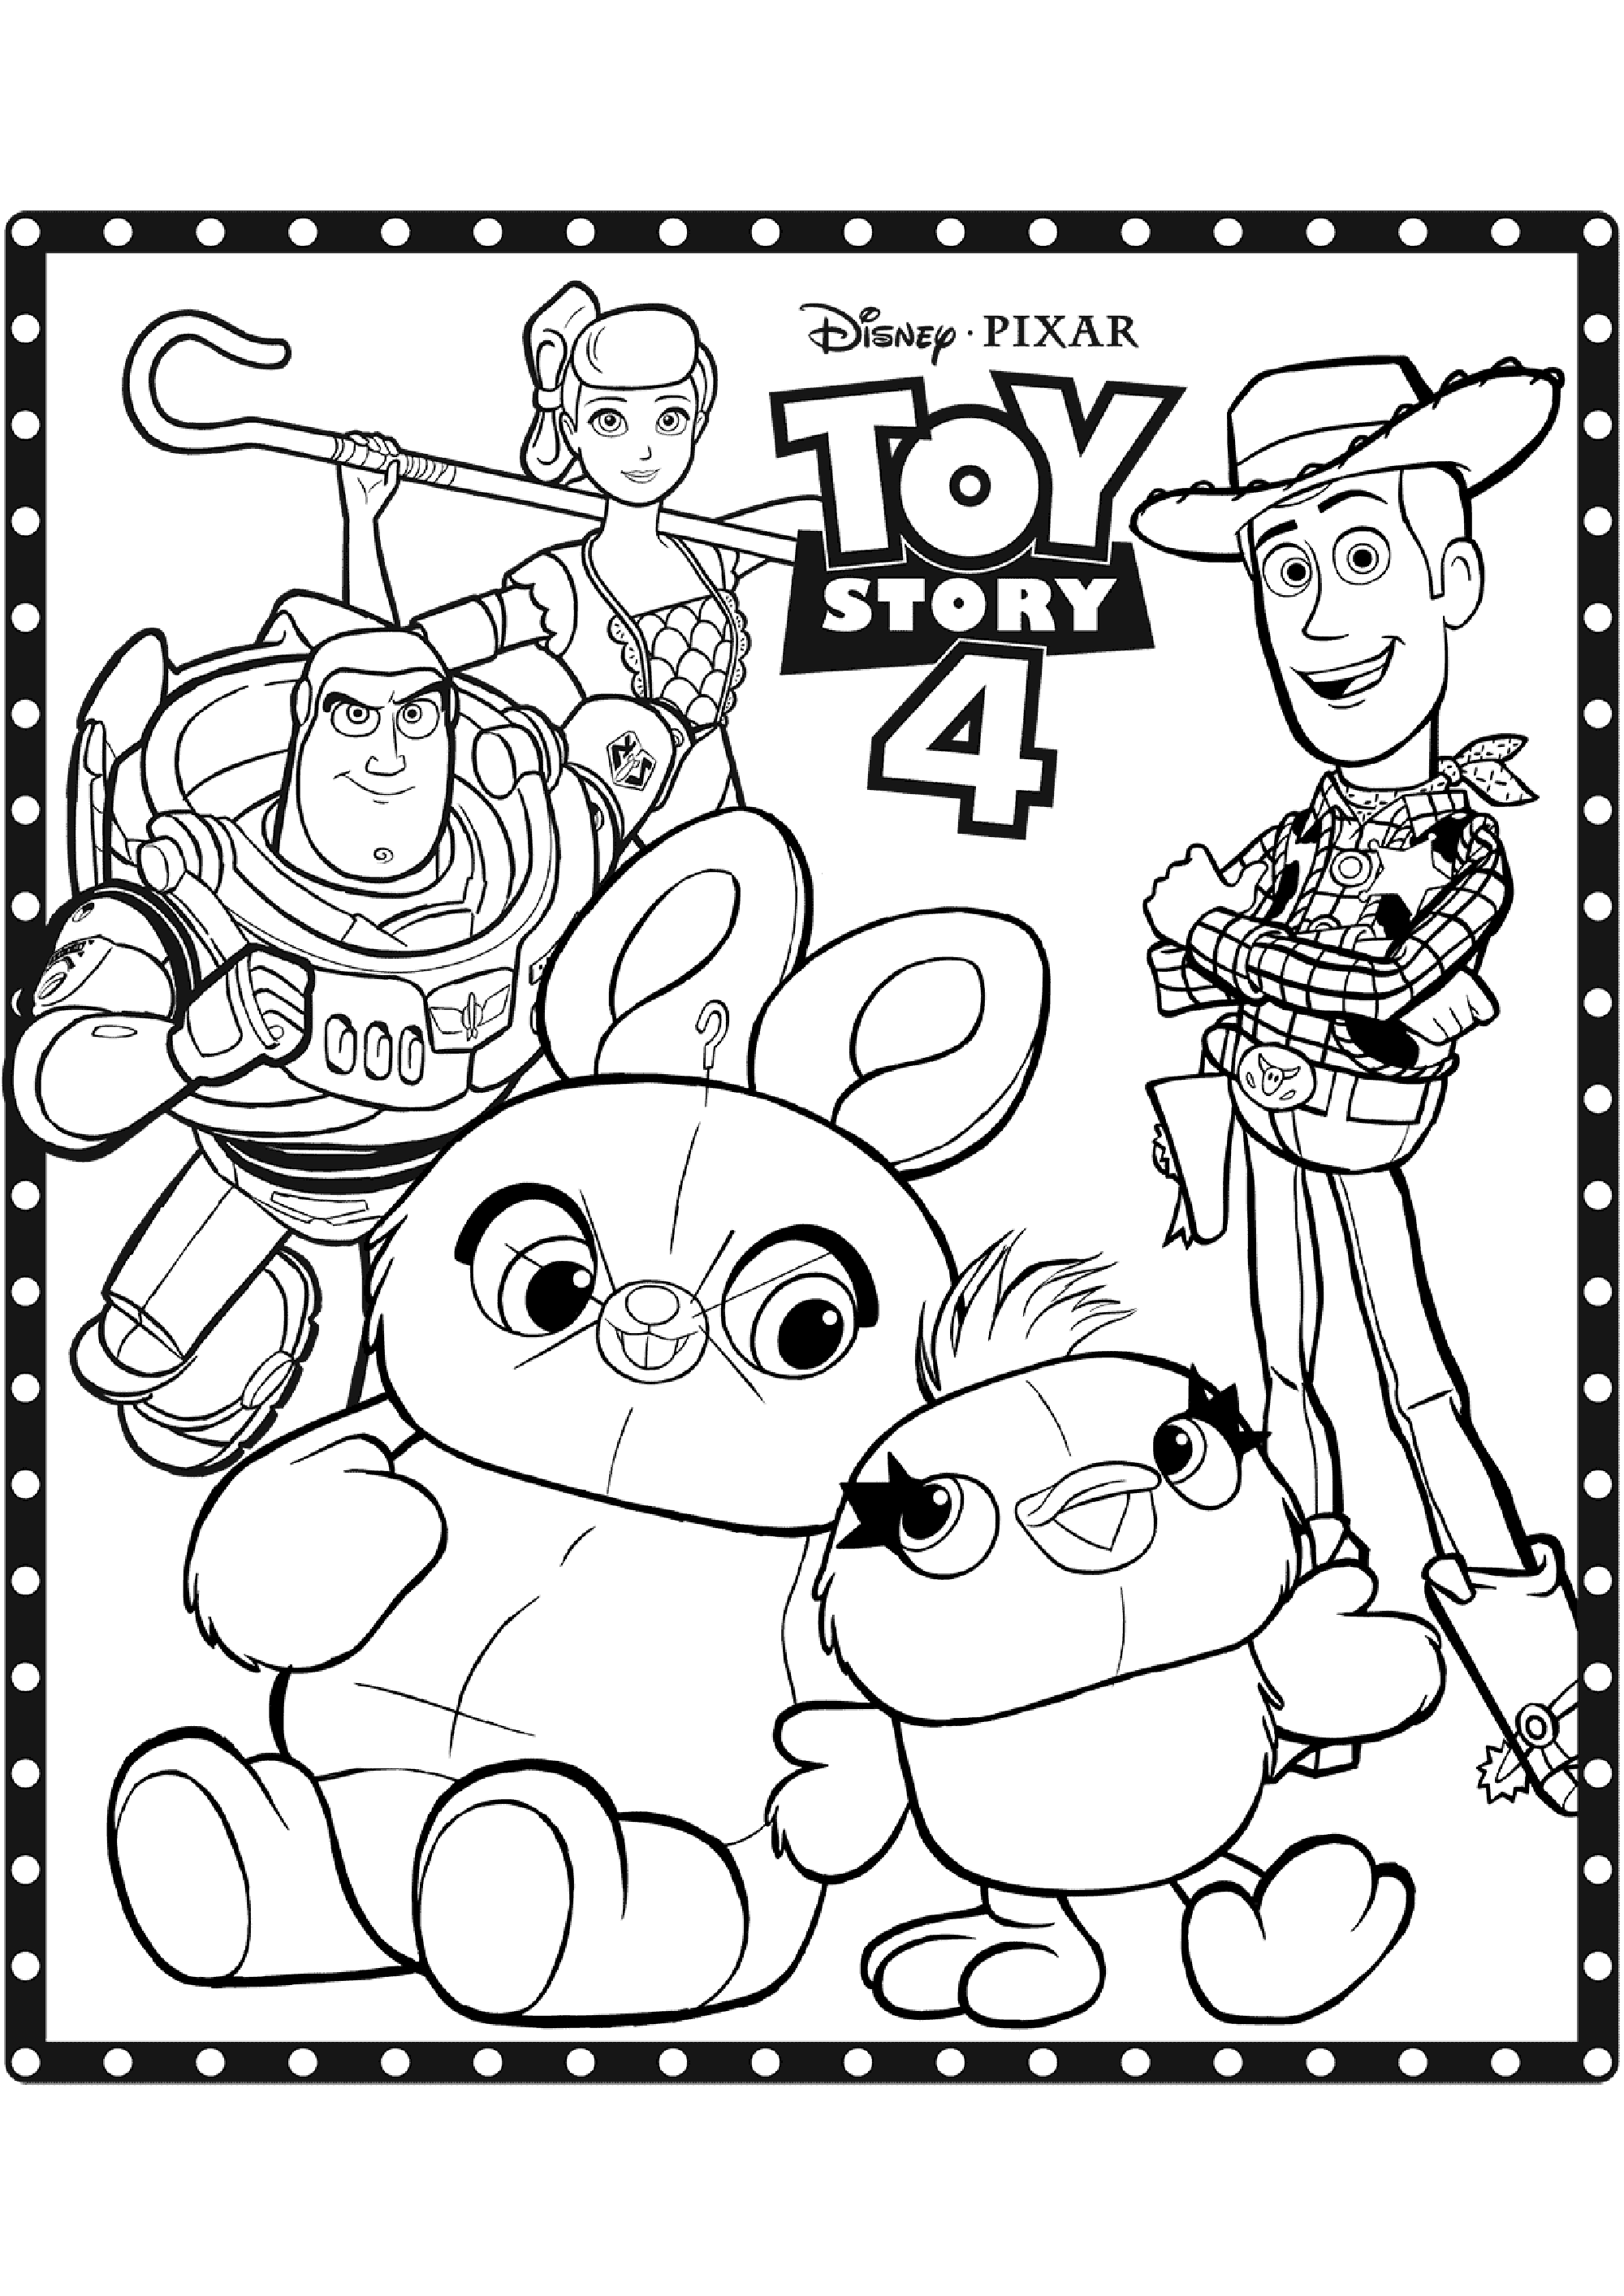 Dibujos para colorear gratis de Toy Story 4 para niños - Toy Story 4 - Just  Color Niños : Dibujos para colorear para niños